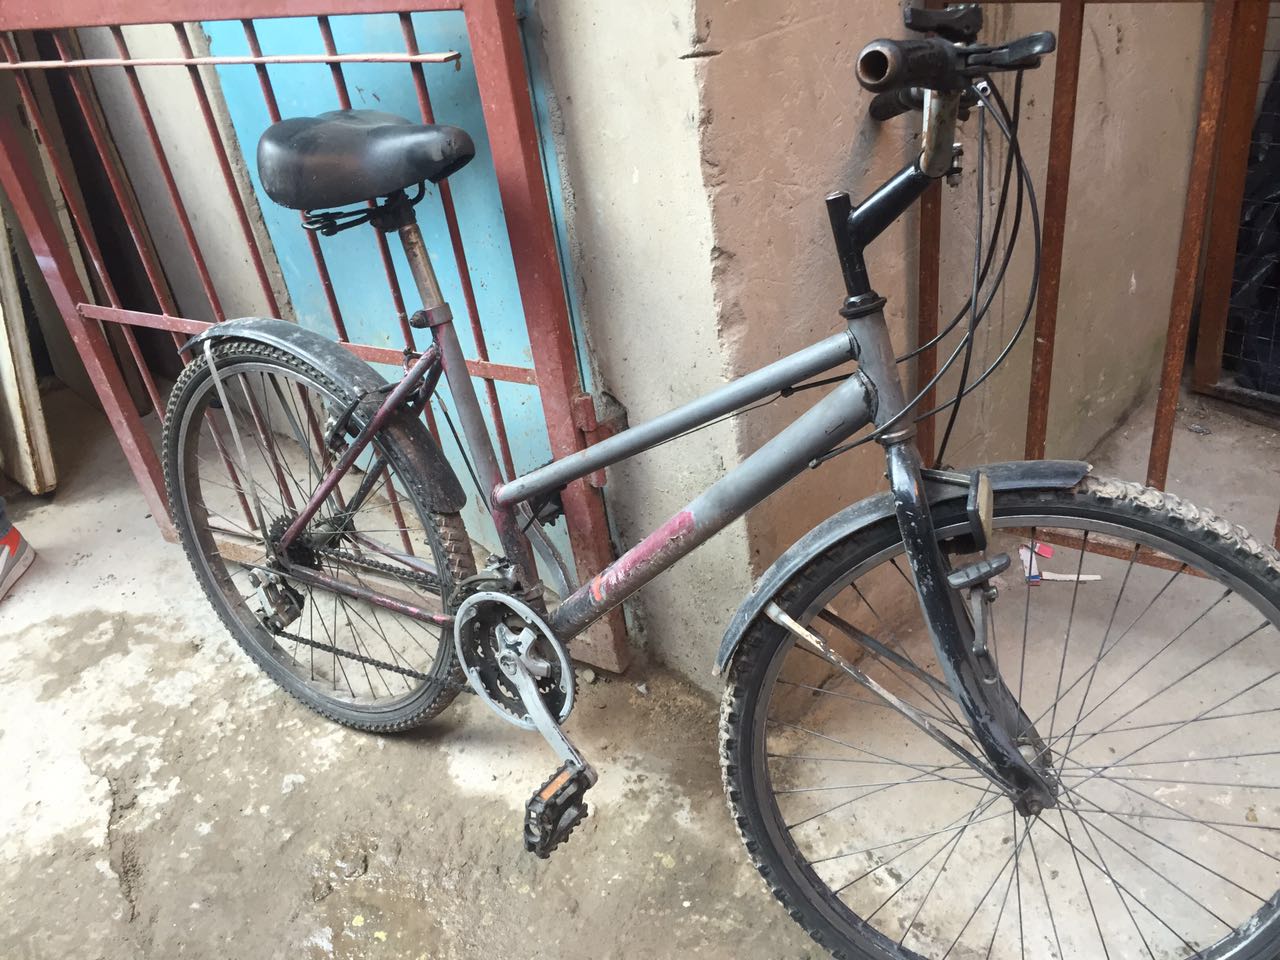 Encontraron bicicletas robadas del programa Ecobici